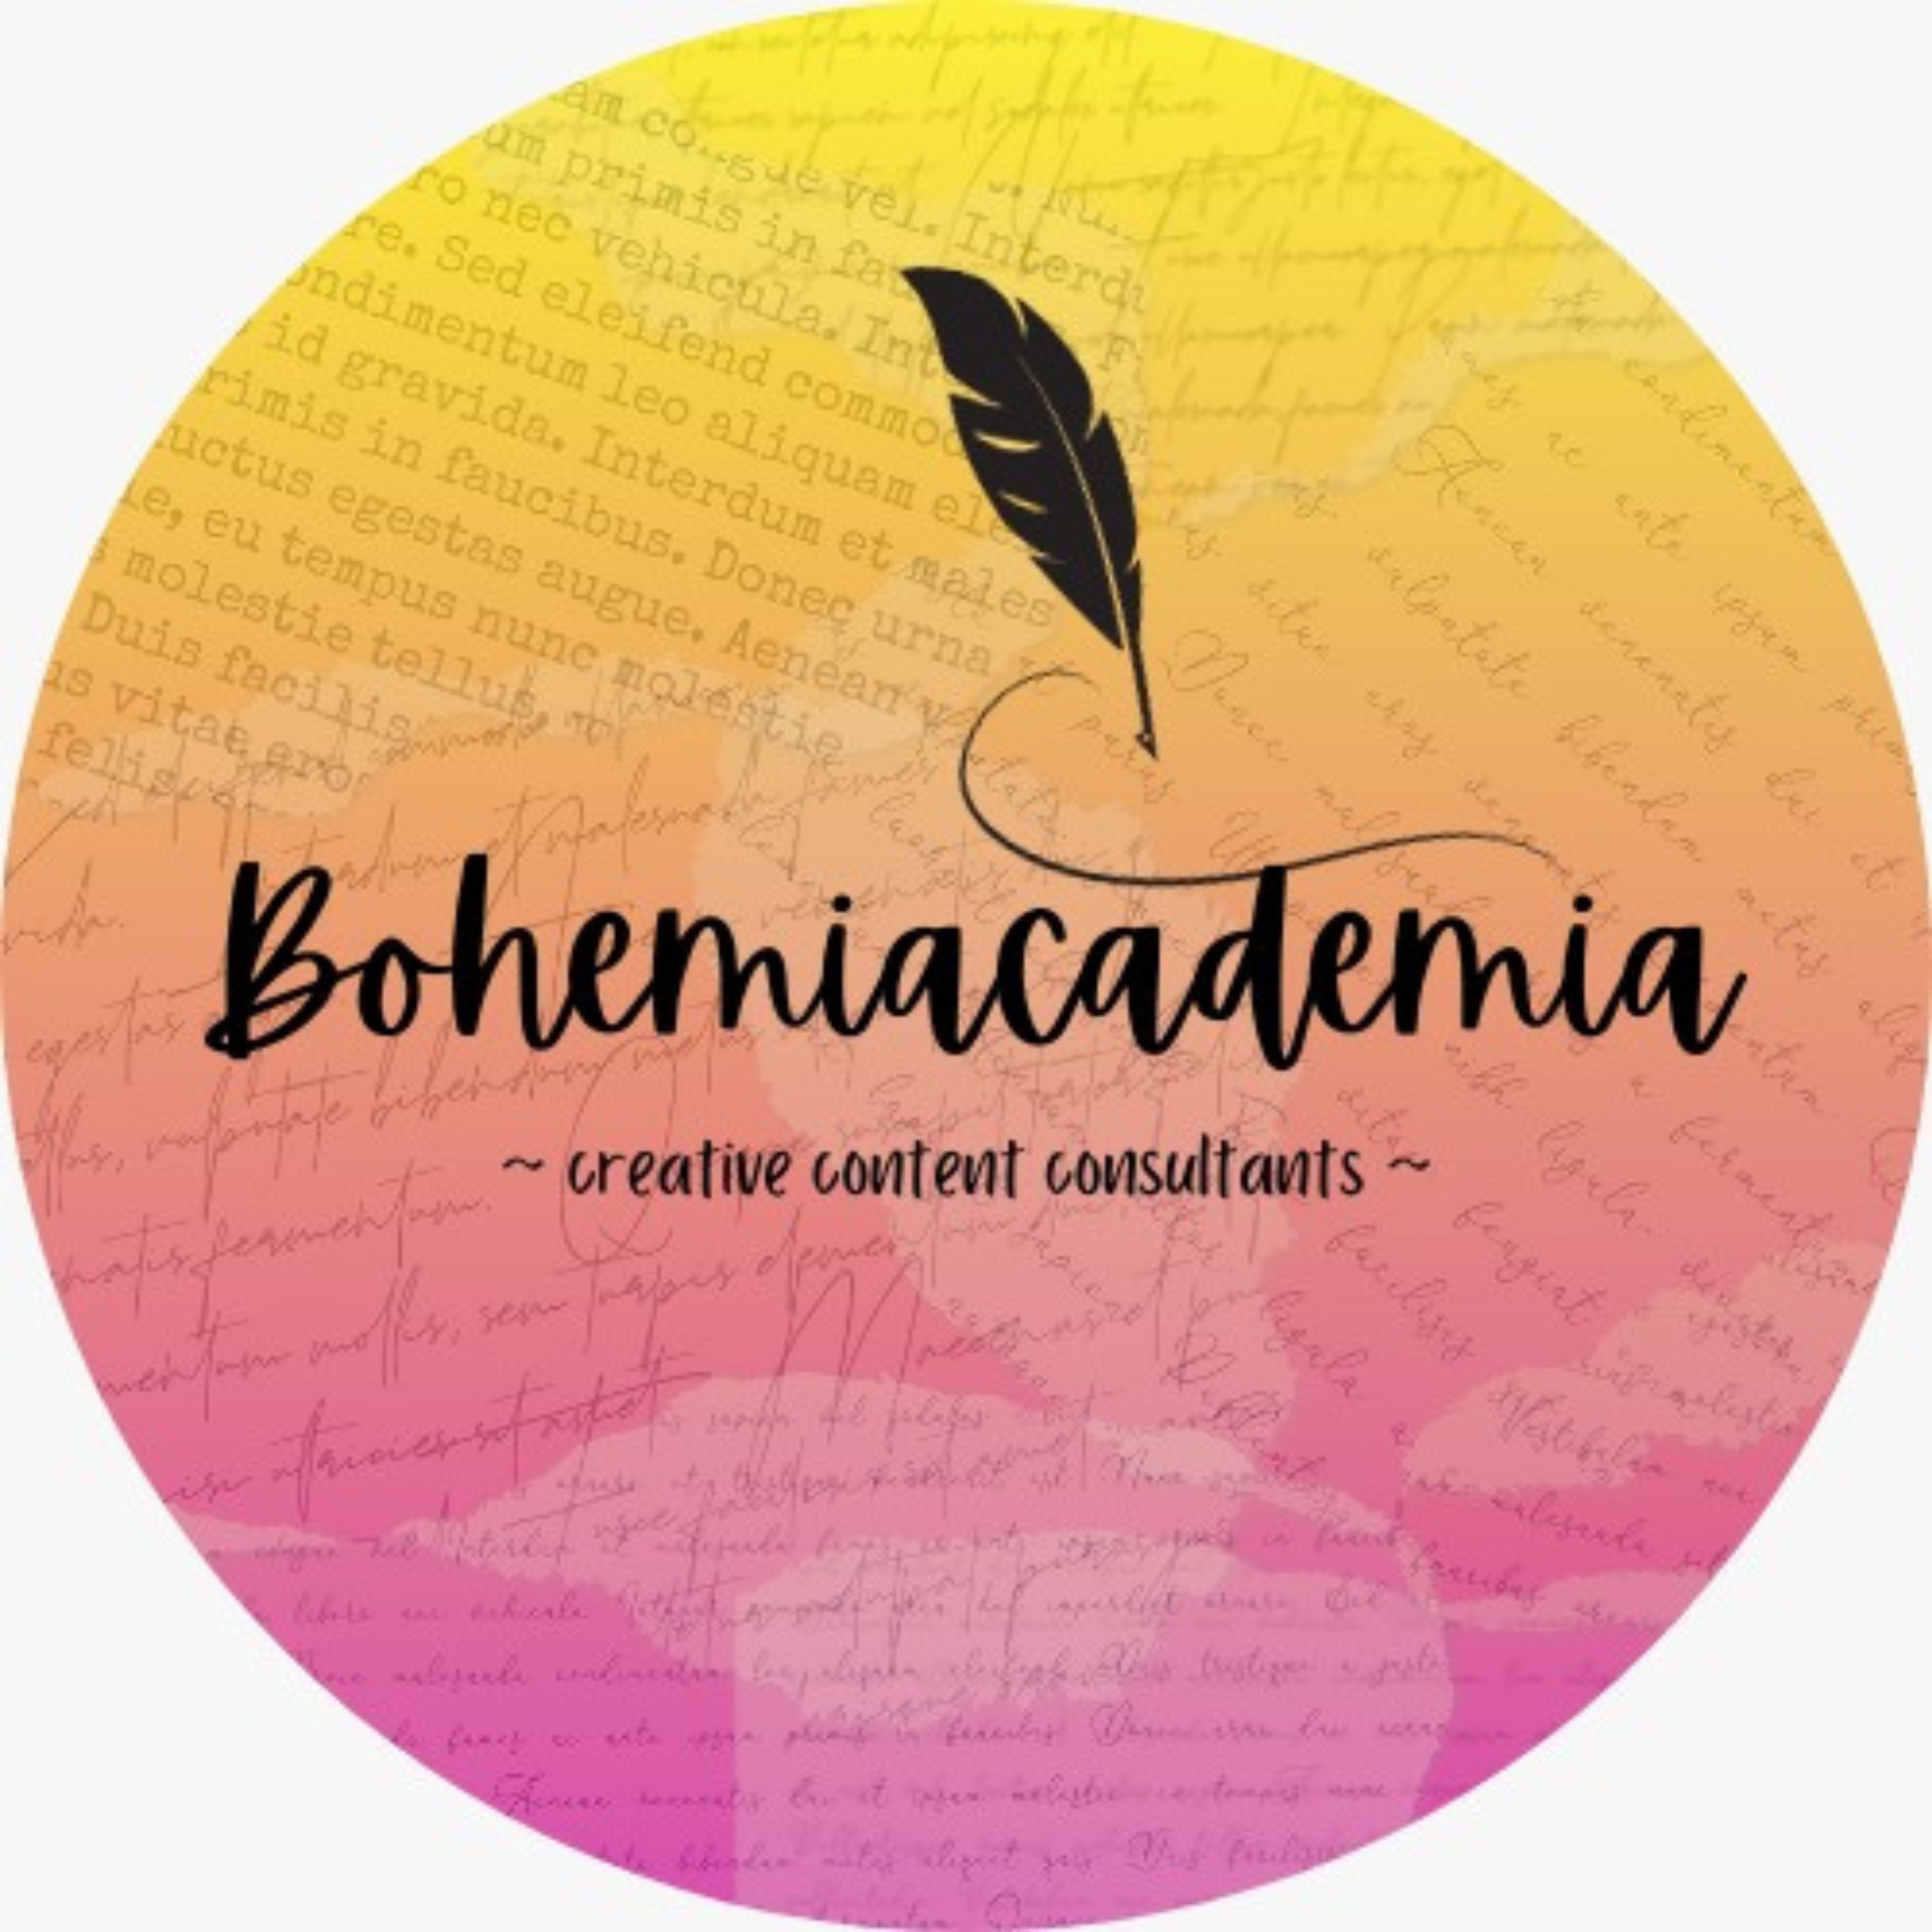 Bohemiacademia